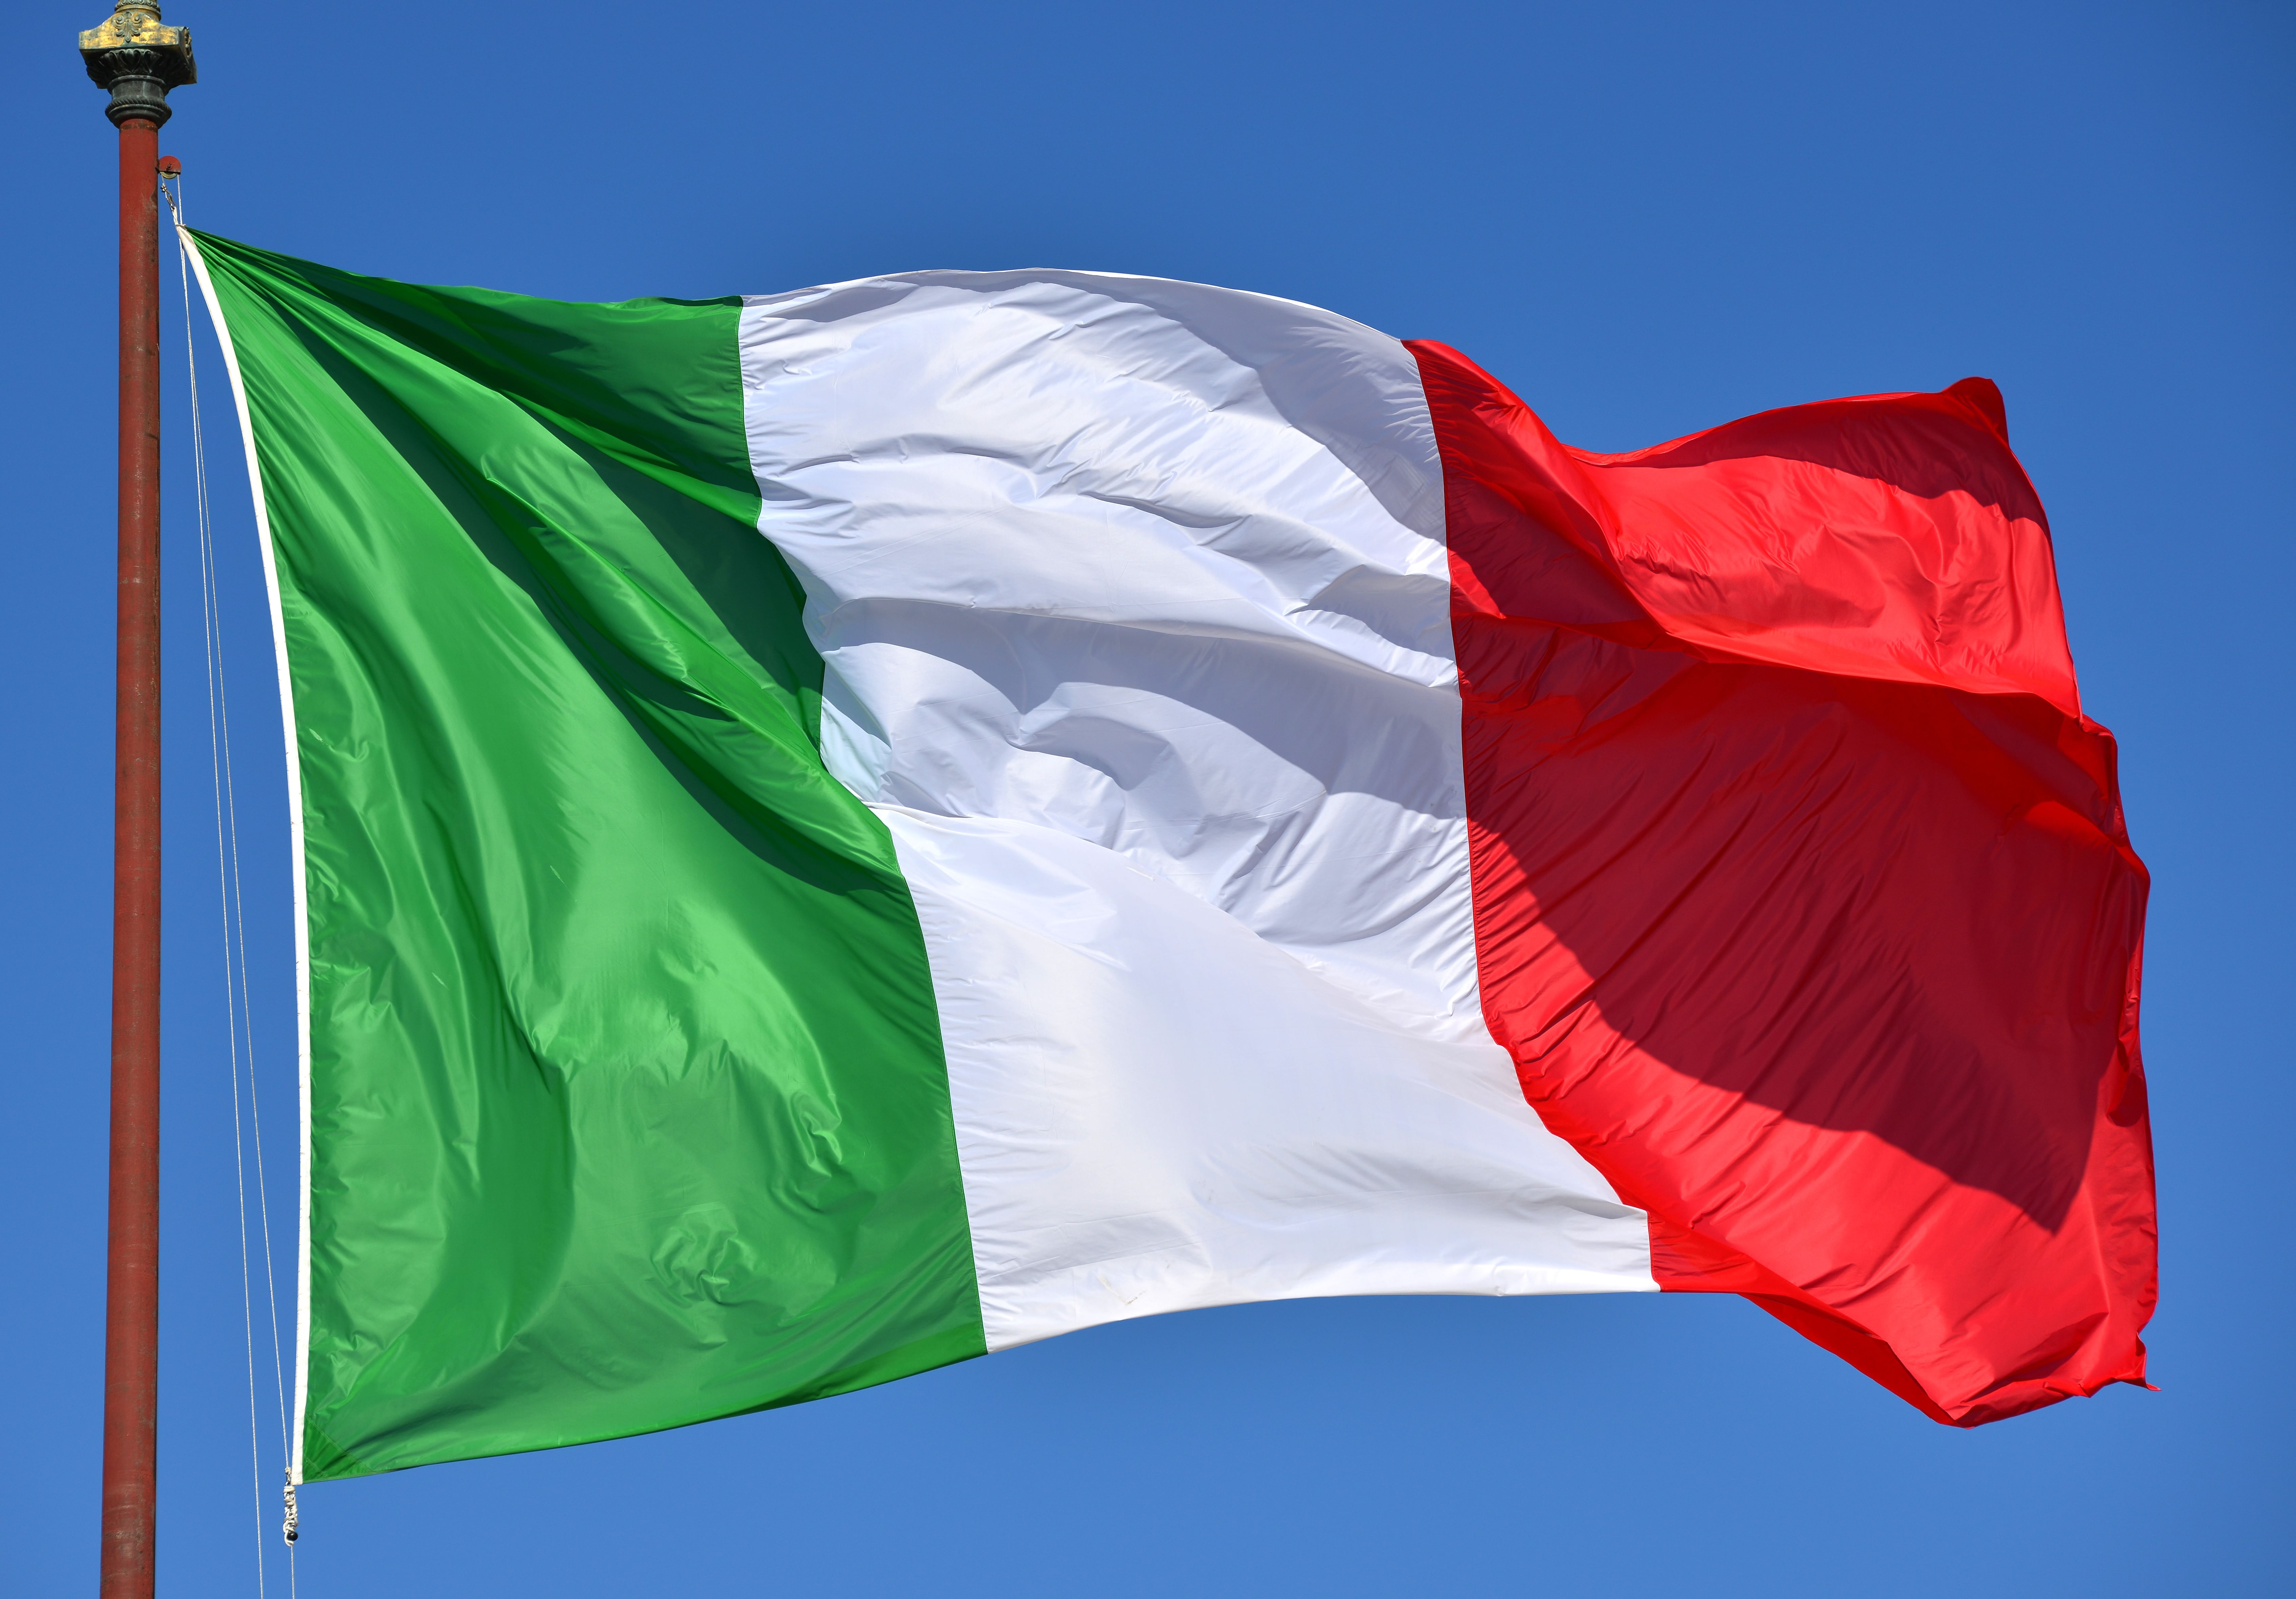 إيطاليا تعتزم استثمار 10 مليارات يورو في الرقائق الإلكترونية .